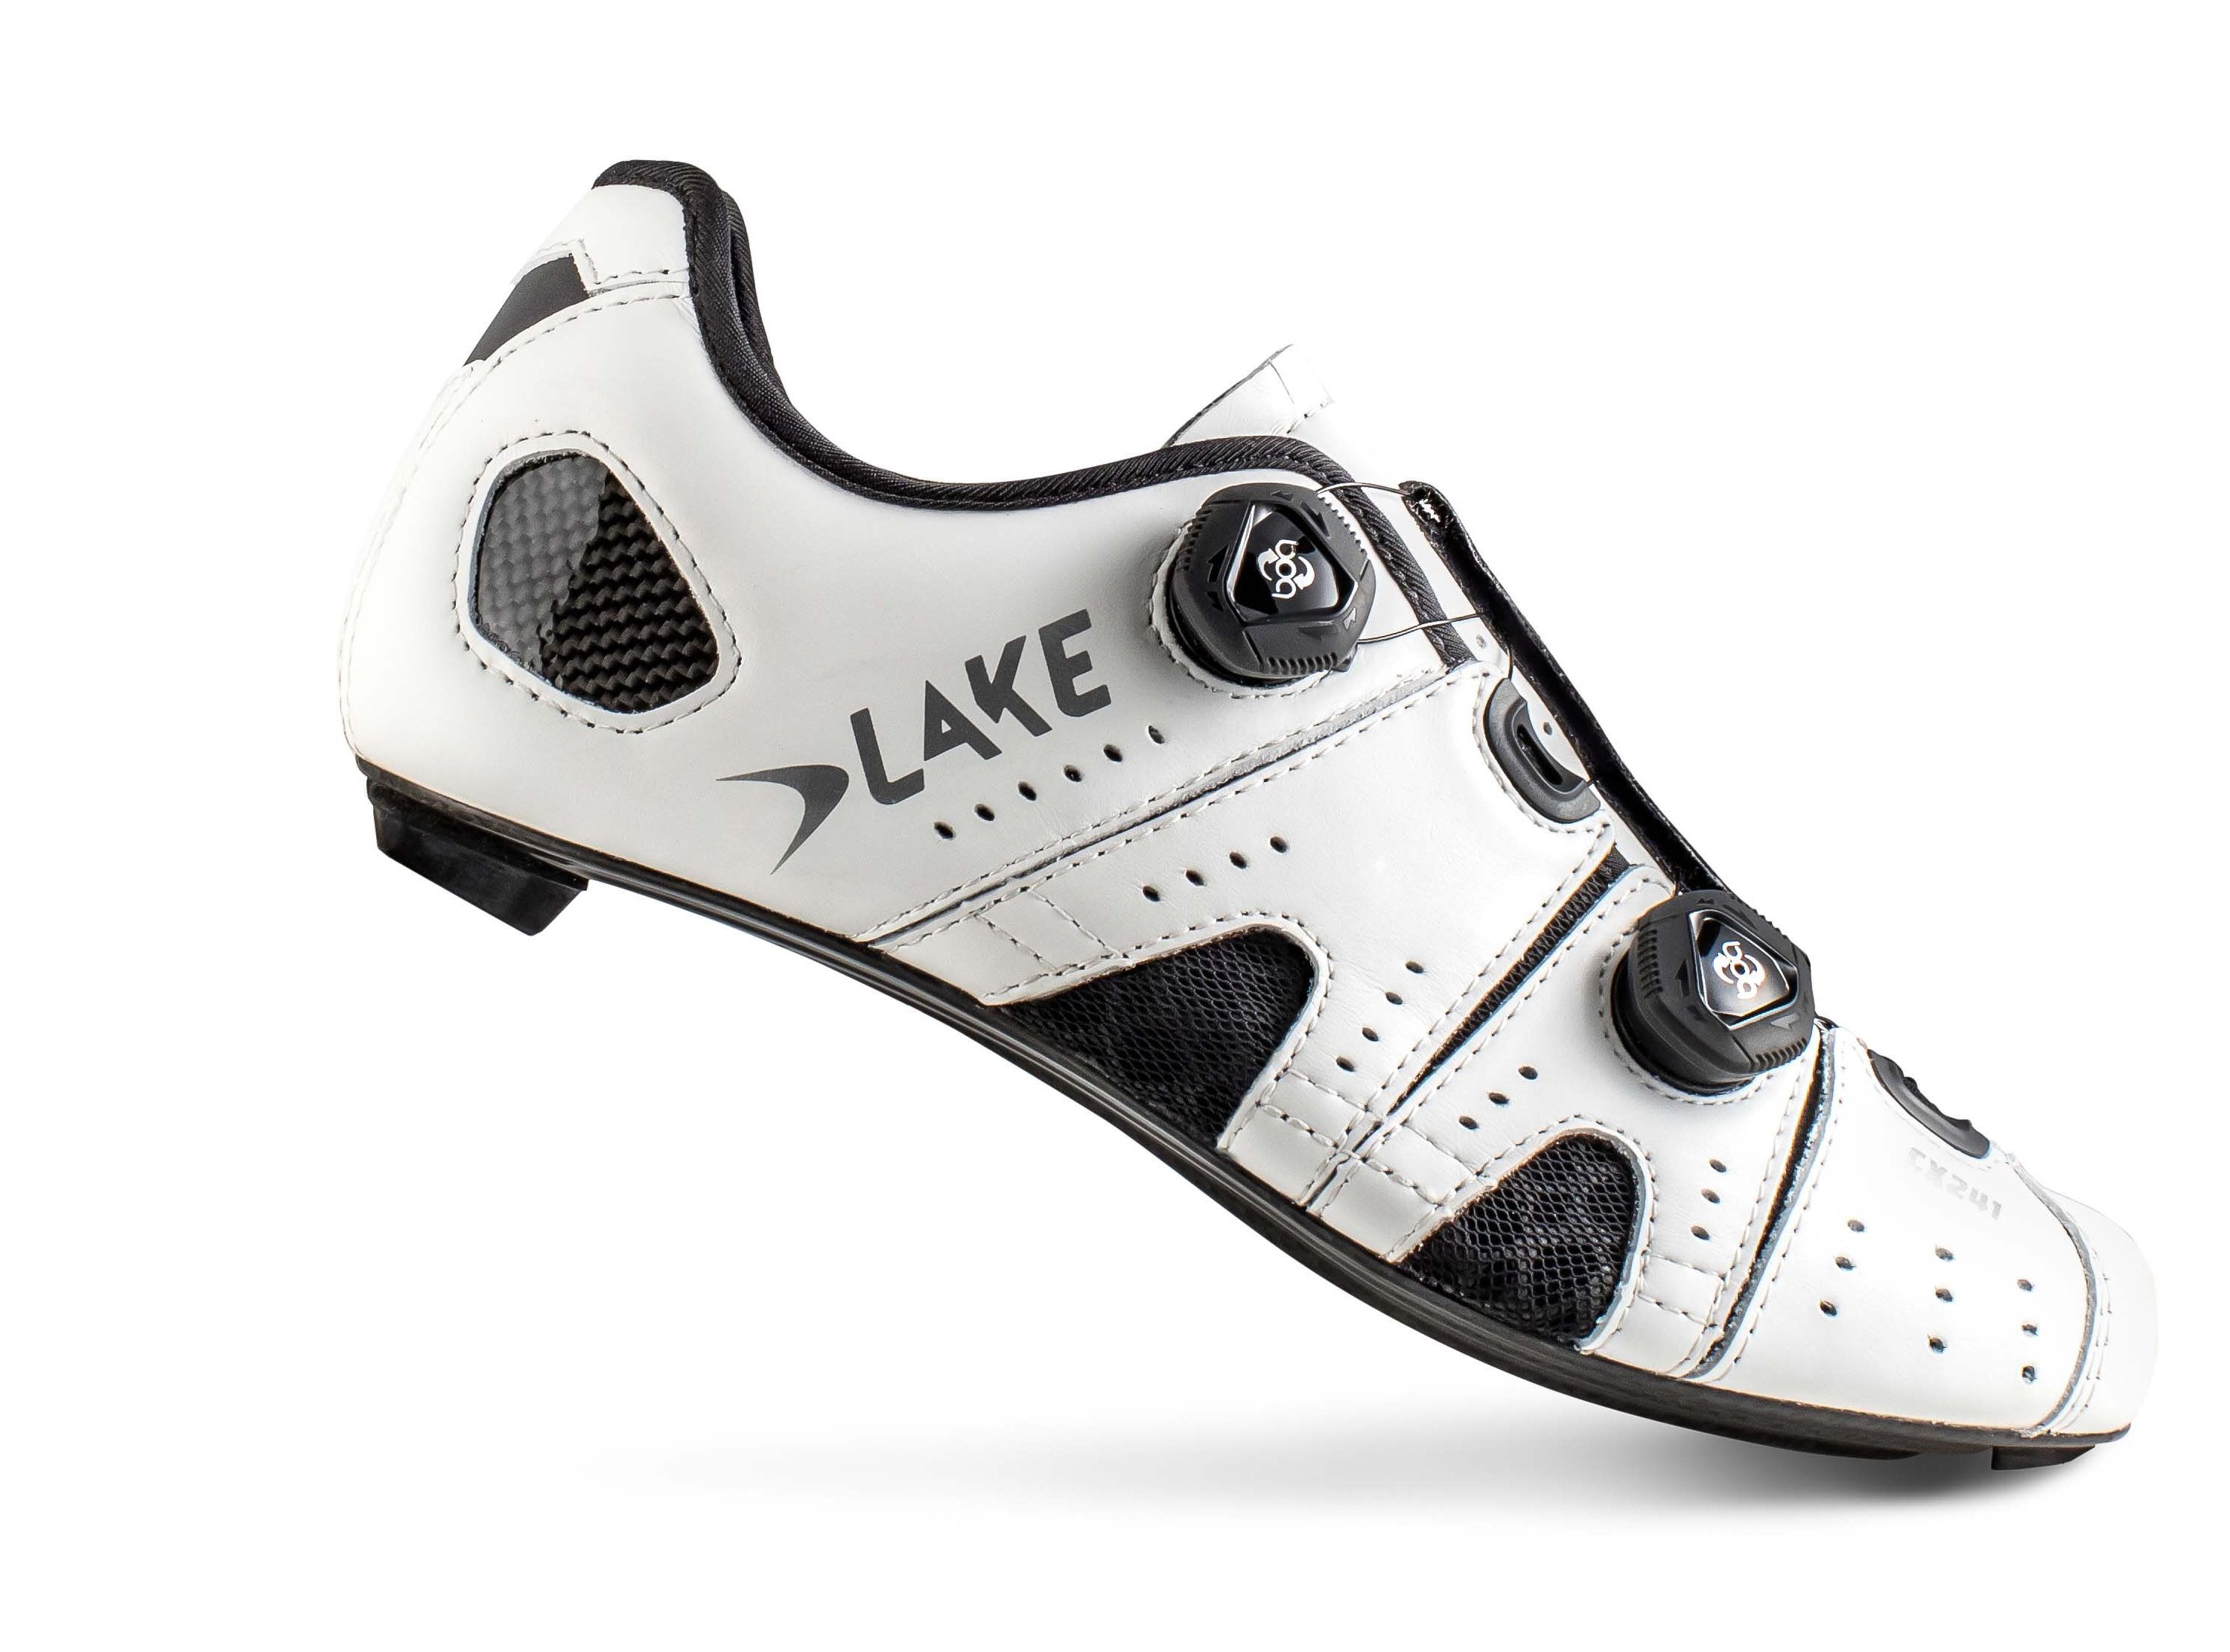 CX241 SALE – Lake Cycling